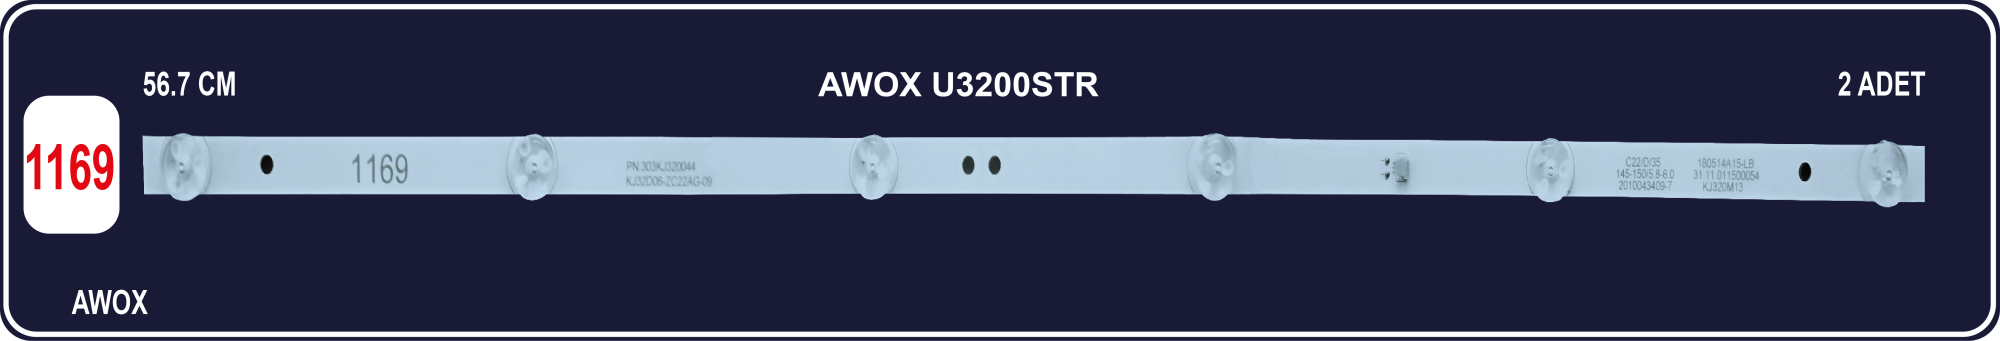 AWOX U3200STR-32RD3200-32TD3200